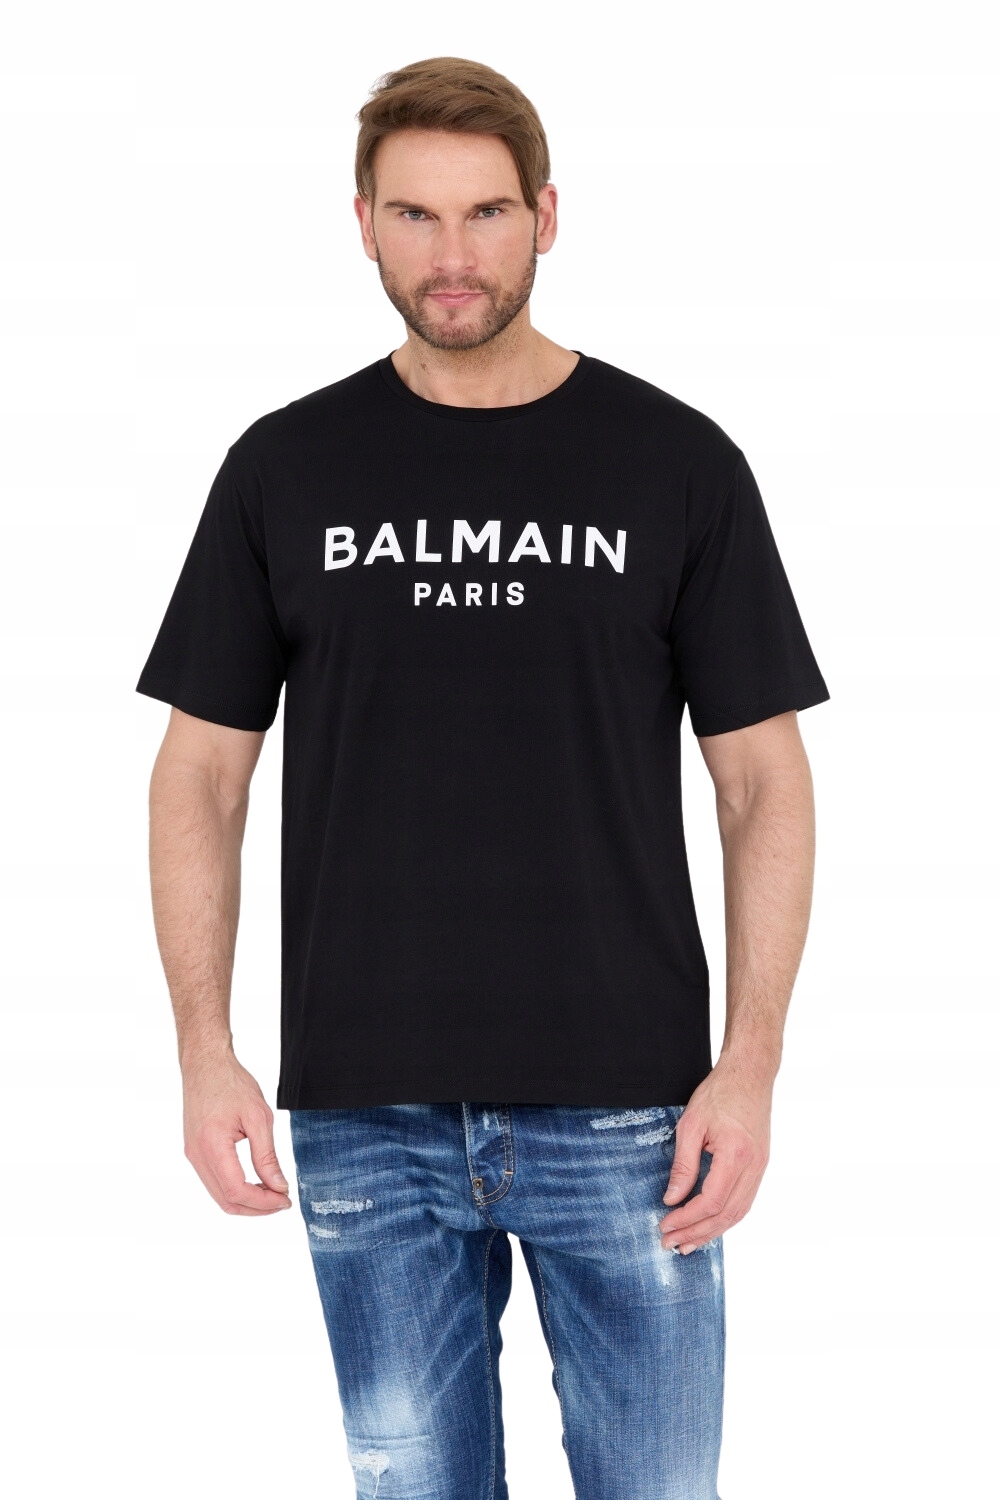 BALMAIN Čierne tričko s potlačou loga 2XL